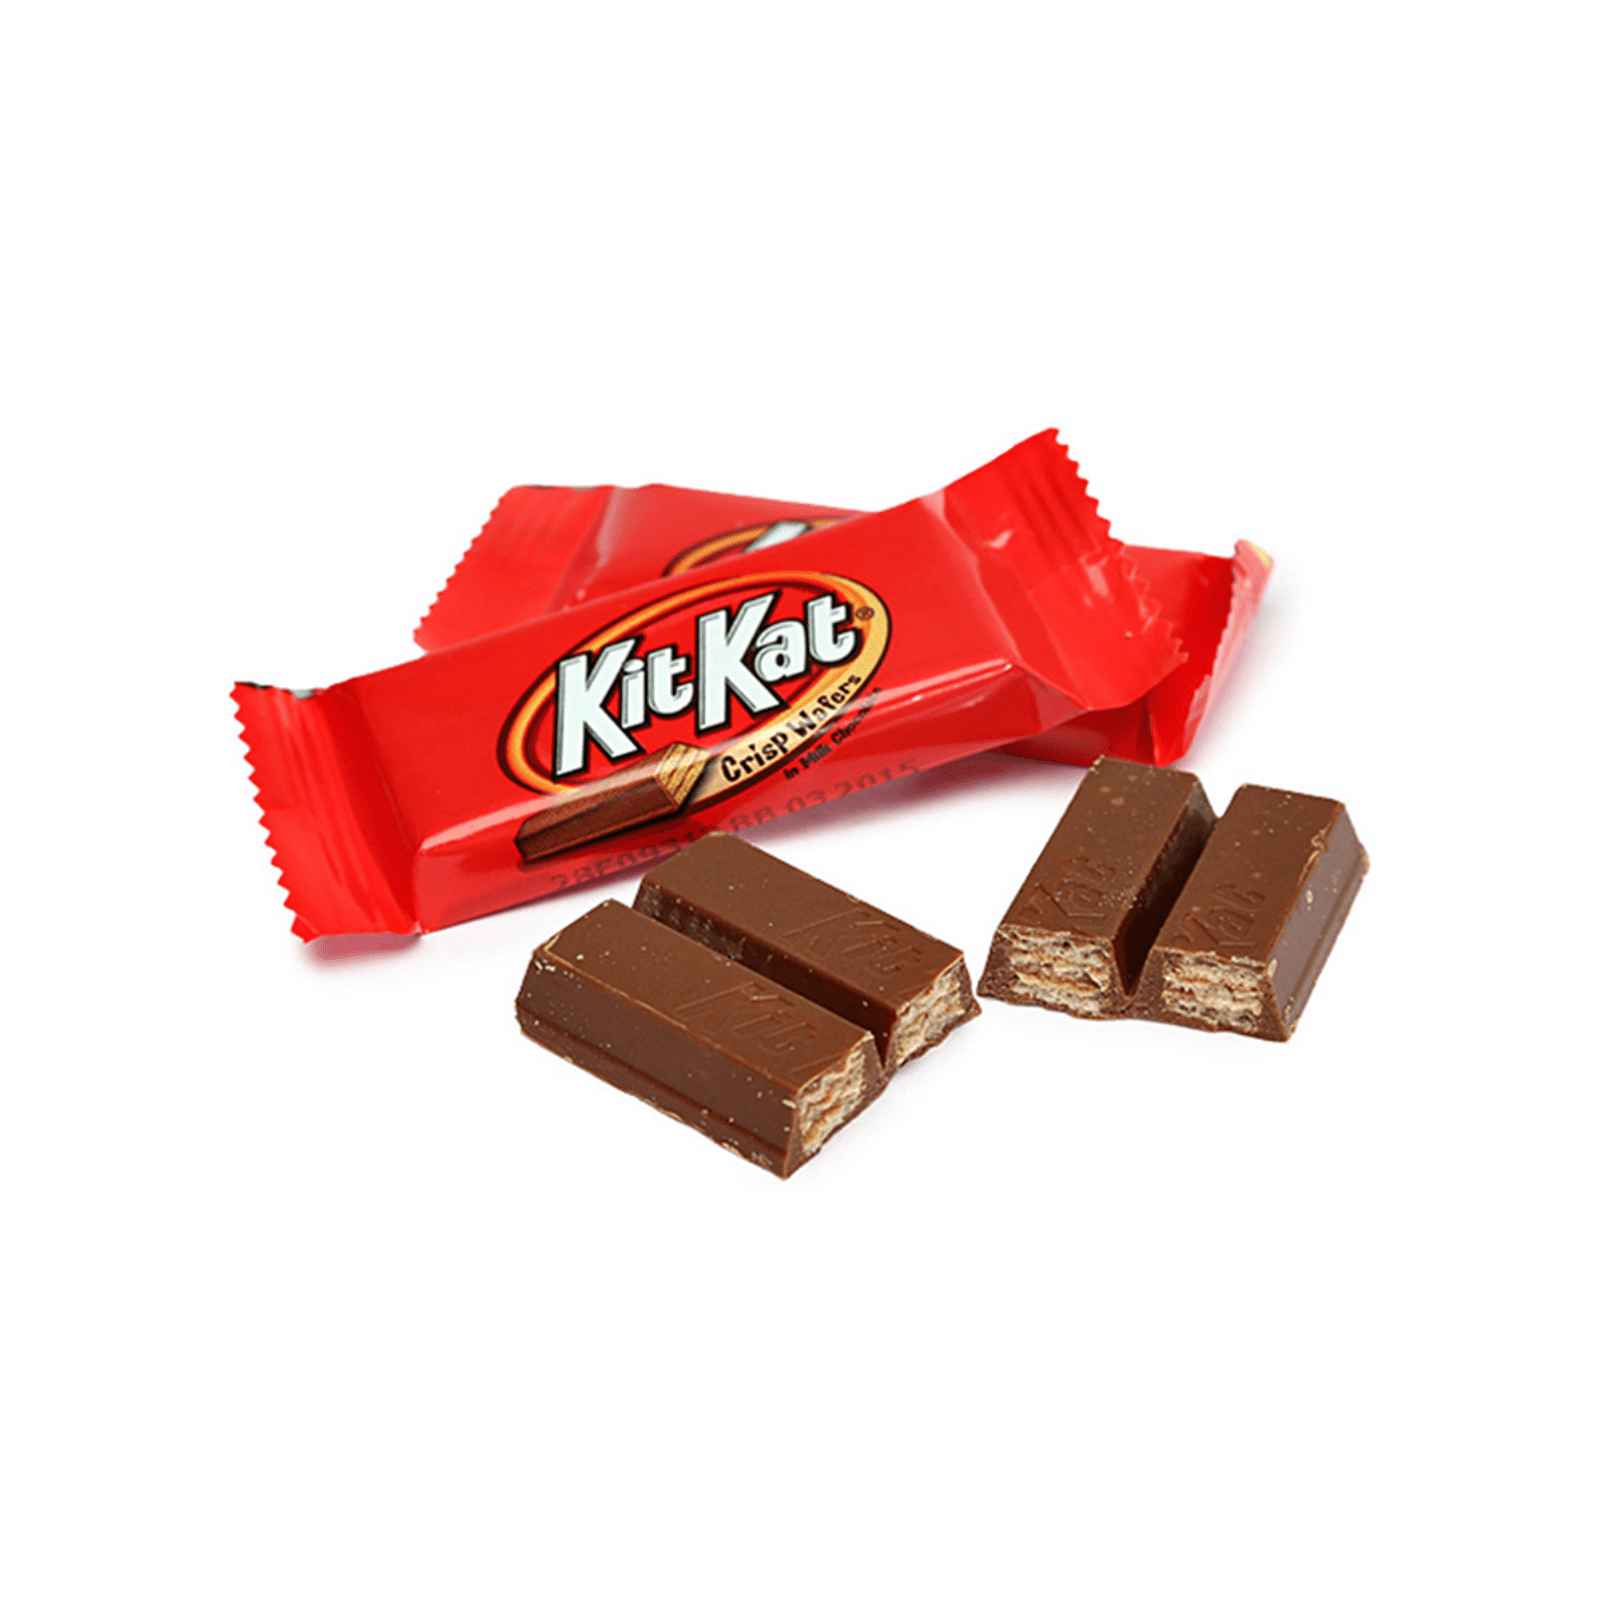 KIT KAT® Milk Chocolate Wafer Easter Candy Bars, 6 ct / 1.5 oz - Kroger